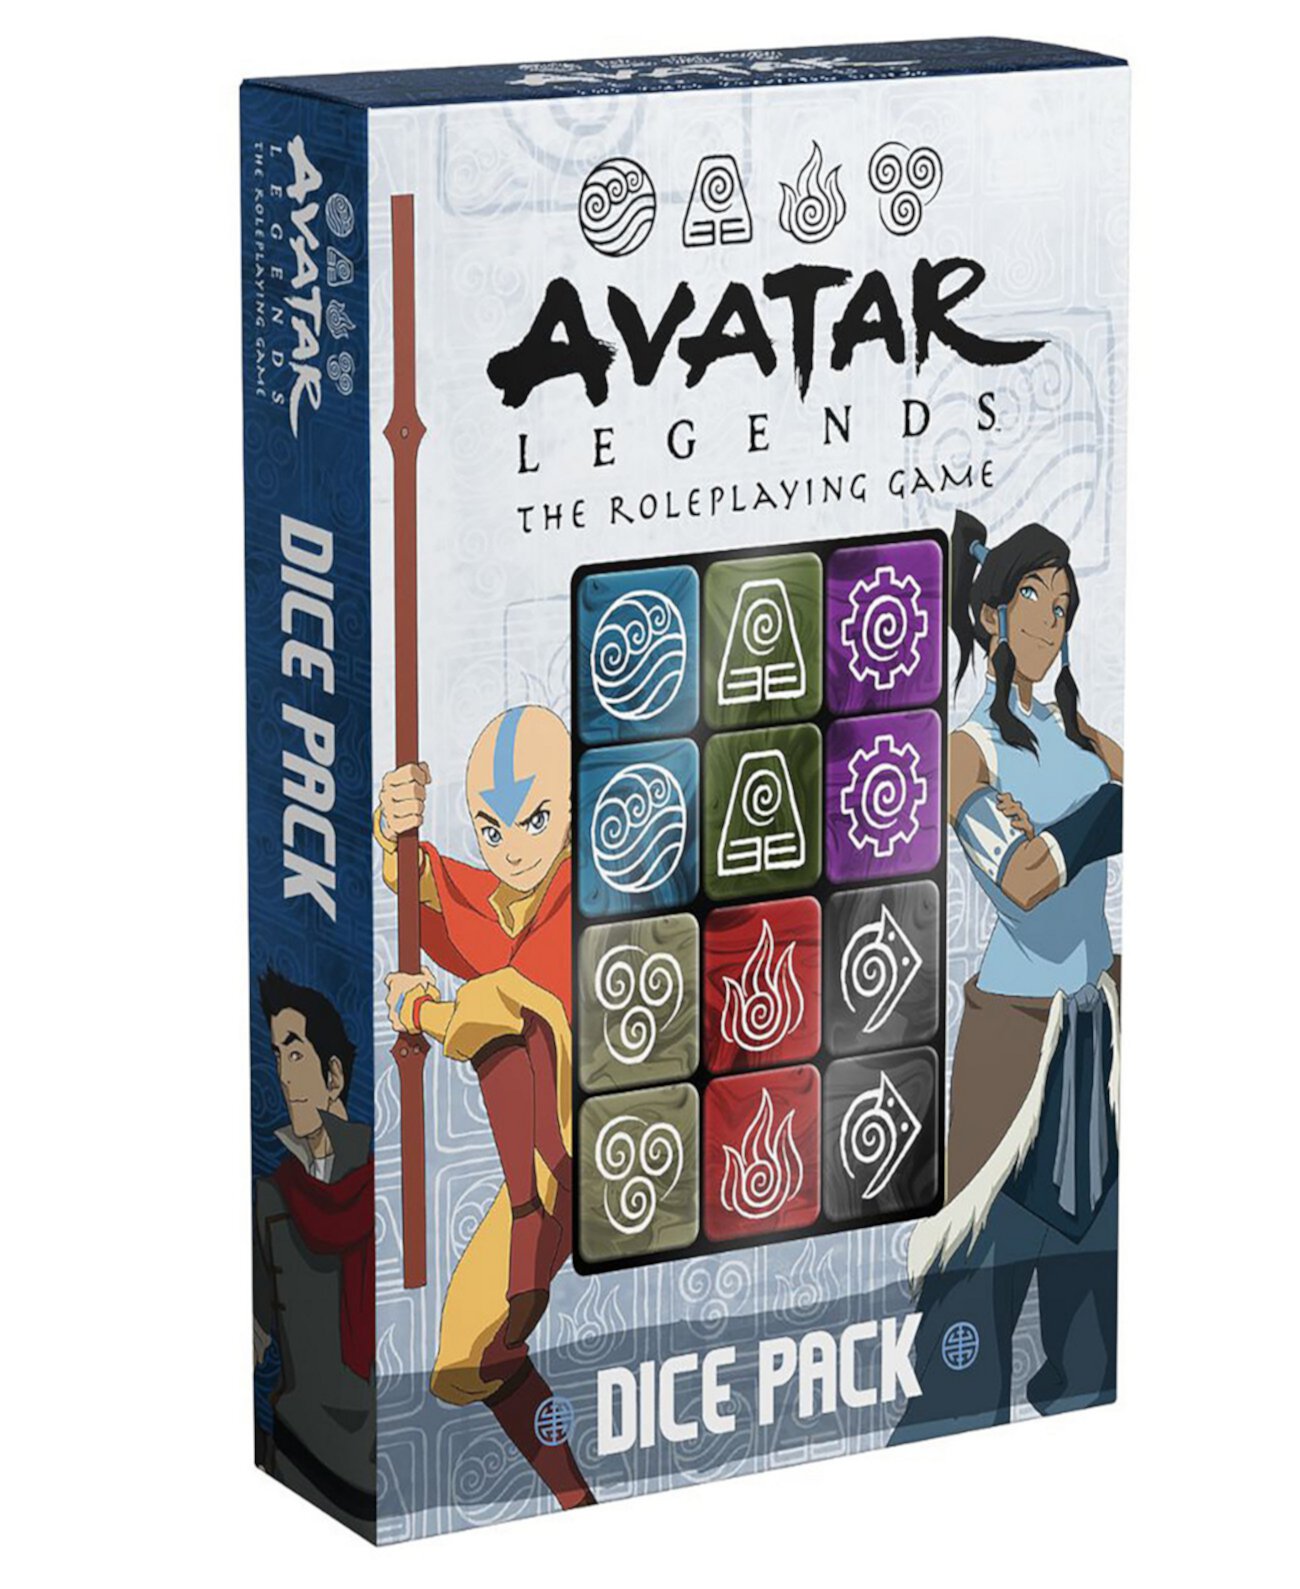 Avatar Legends The Rpg Dice Pack, набор из 12 кубиков с гравировкой, аксессуар для ролевой игры, шестигранный, 6 пар кубиков, демонстрирующих различные типы тренировок Magpie Games